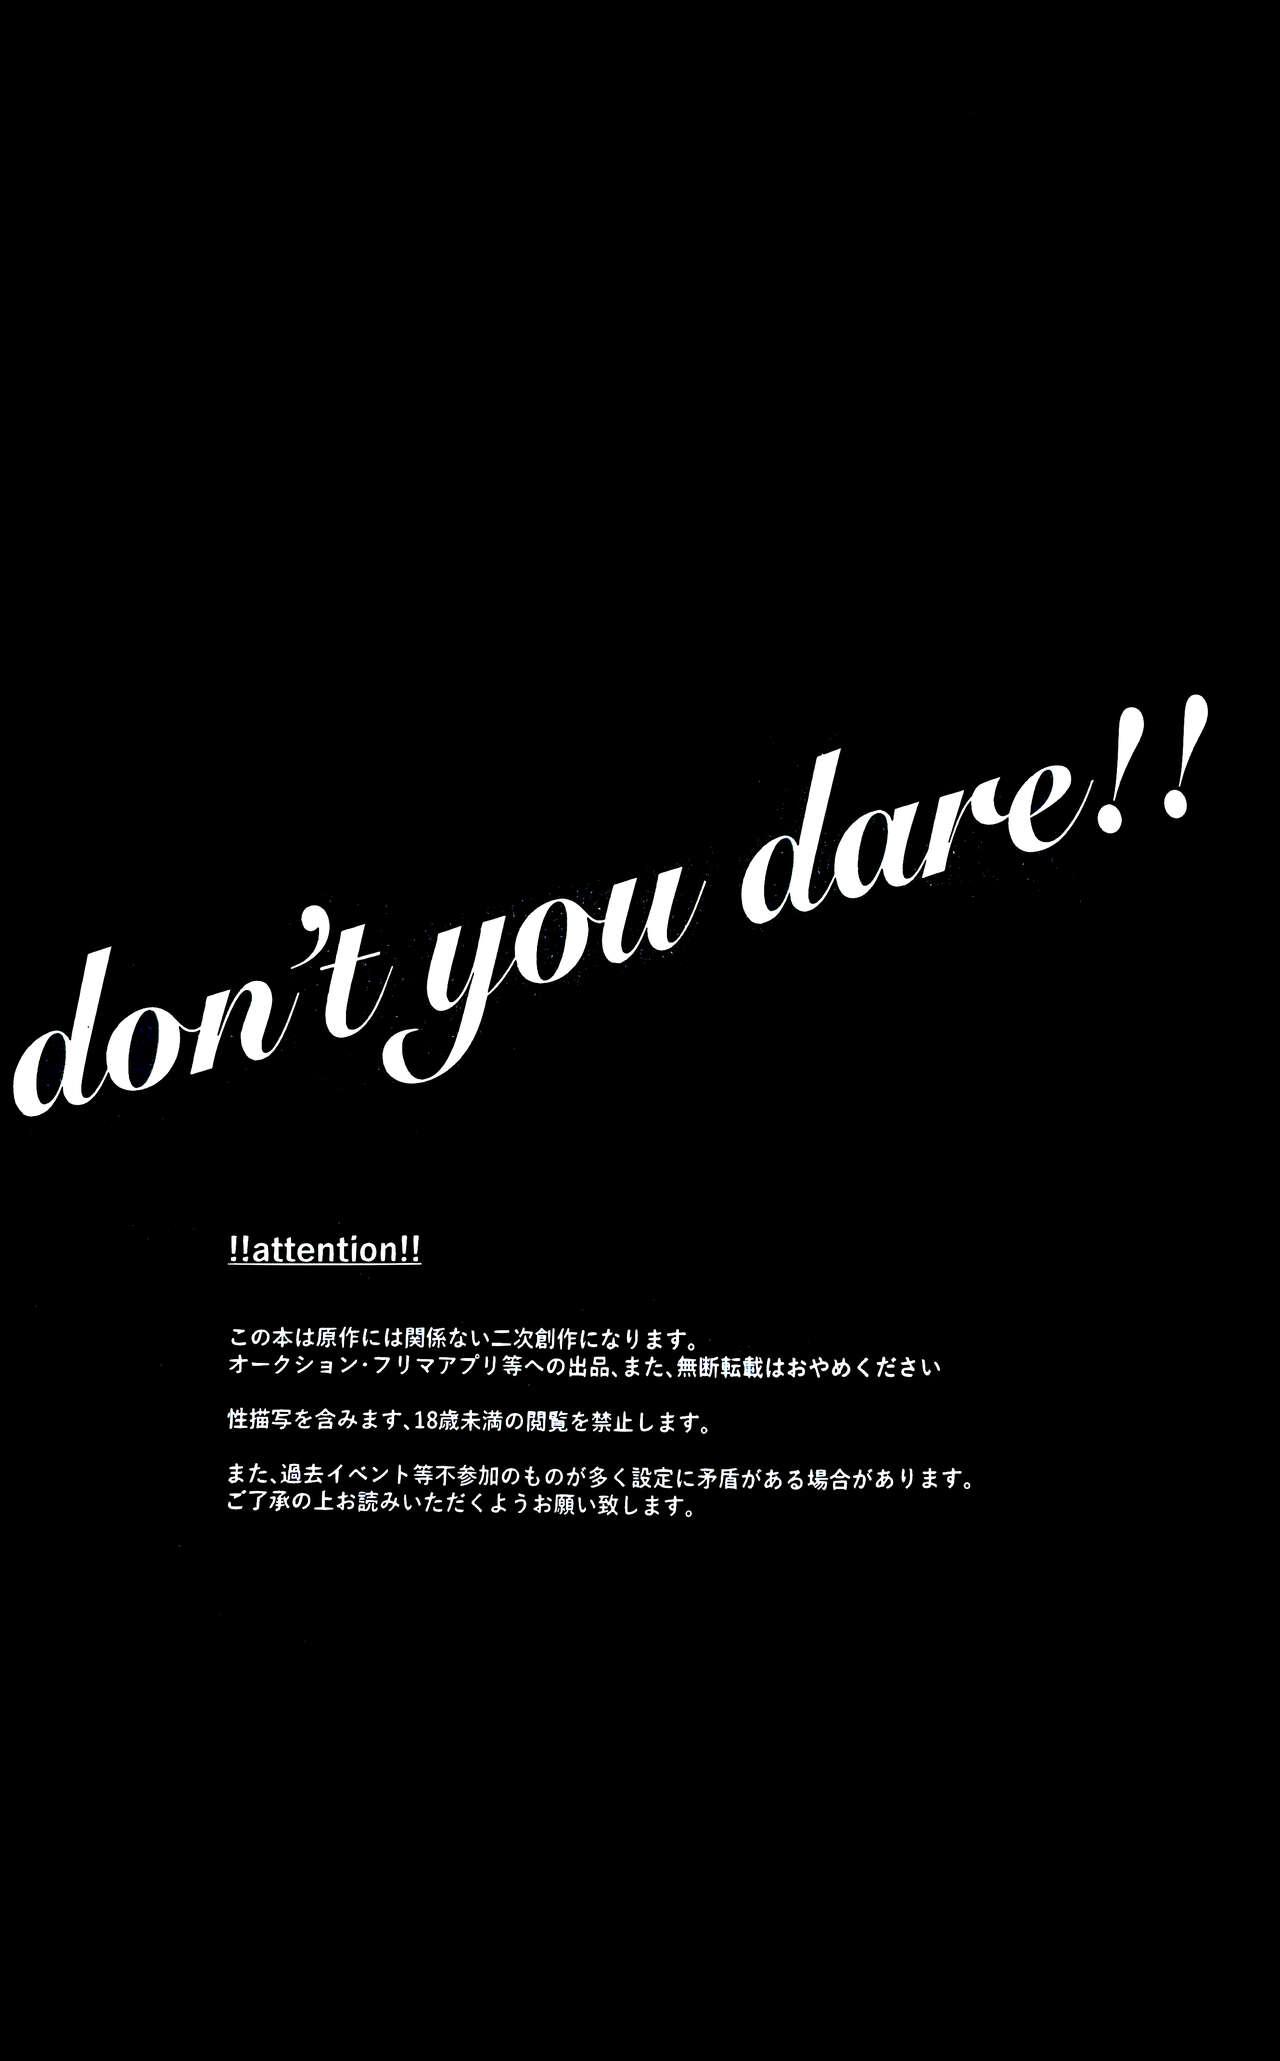 don't you dare!! 1